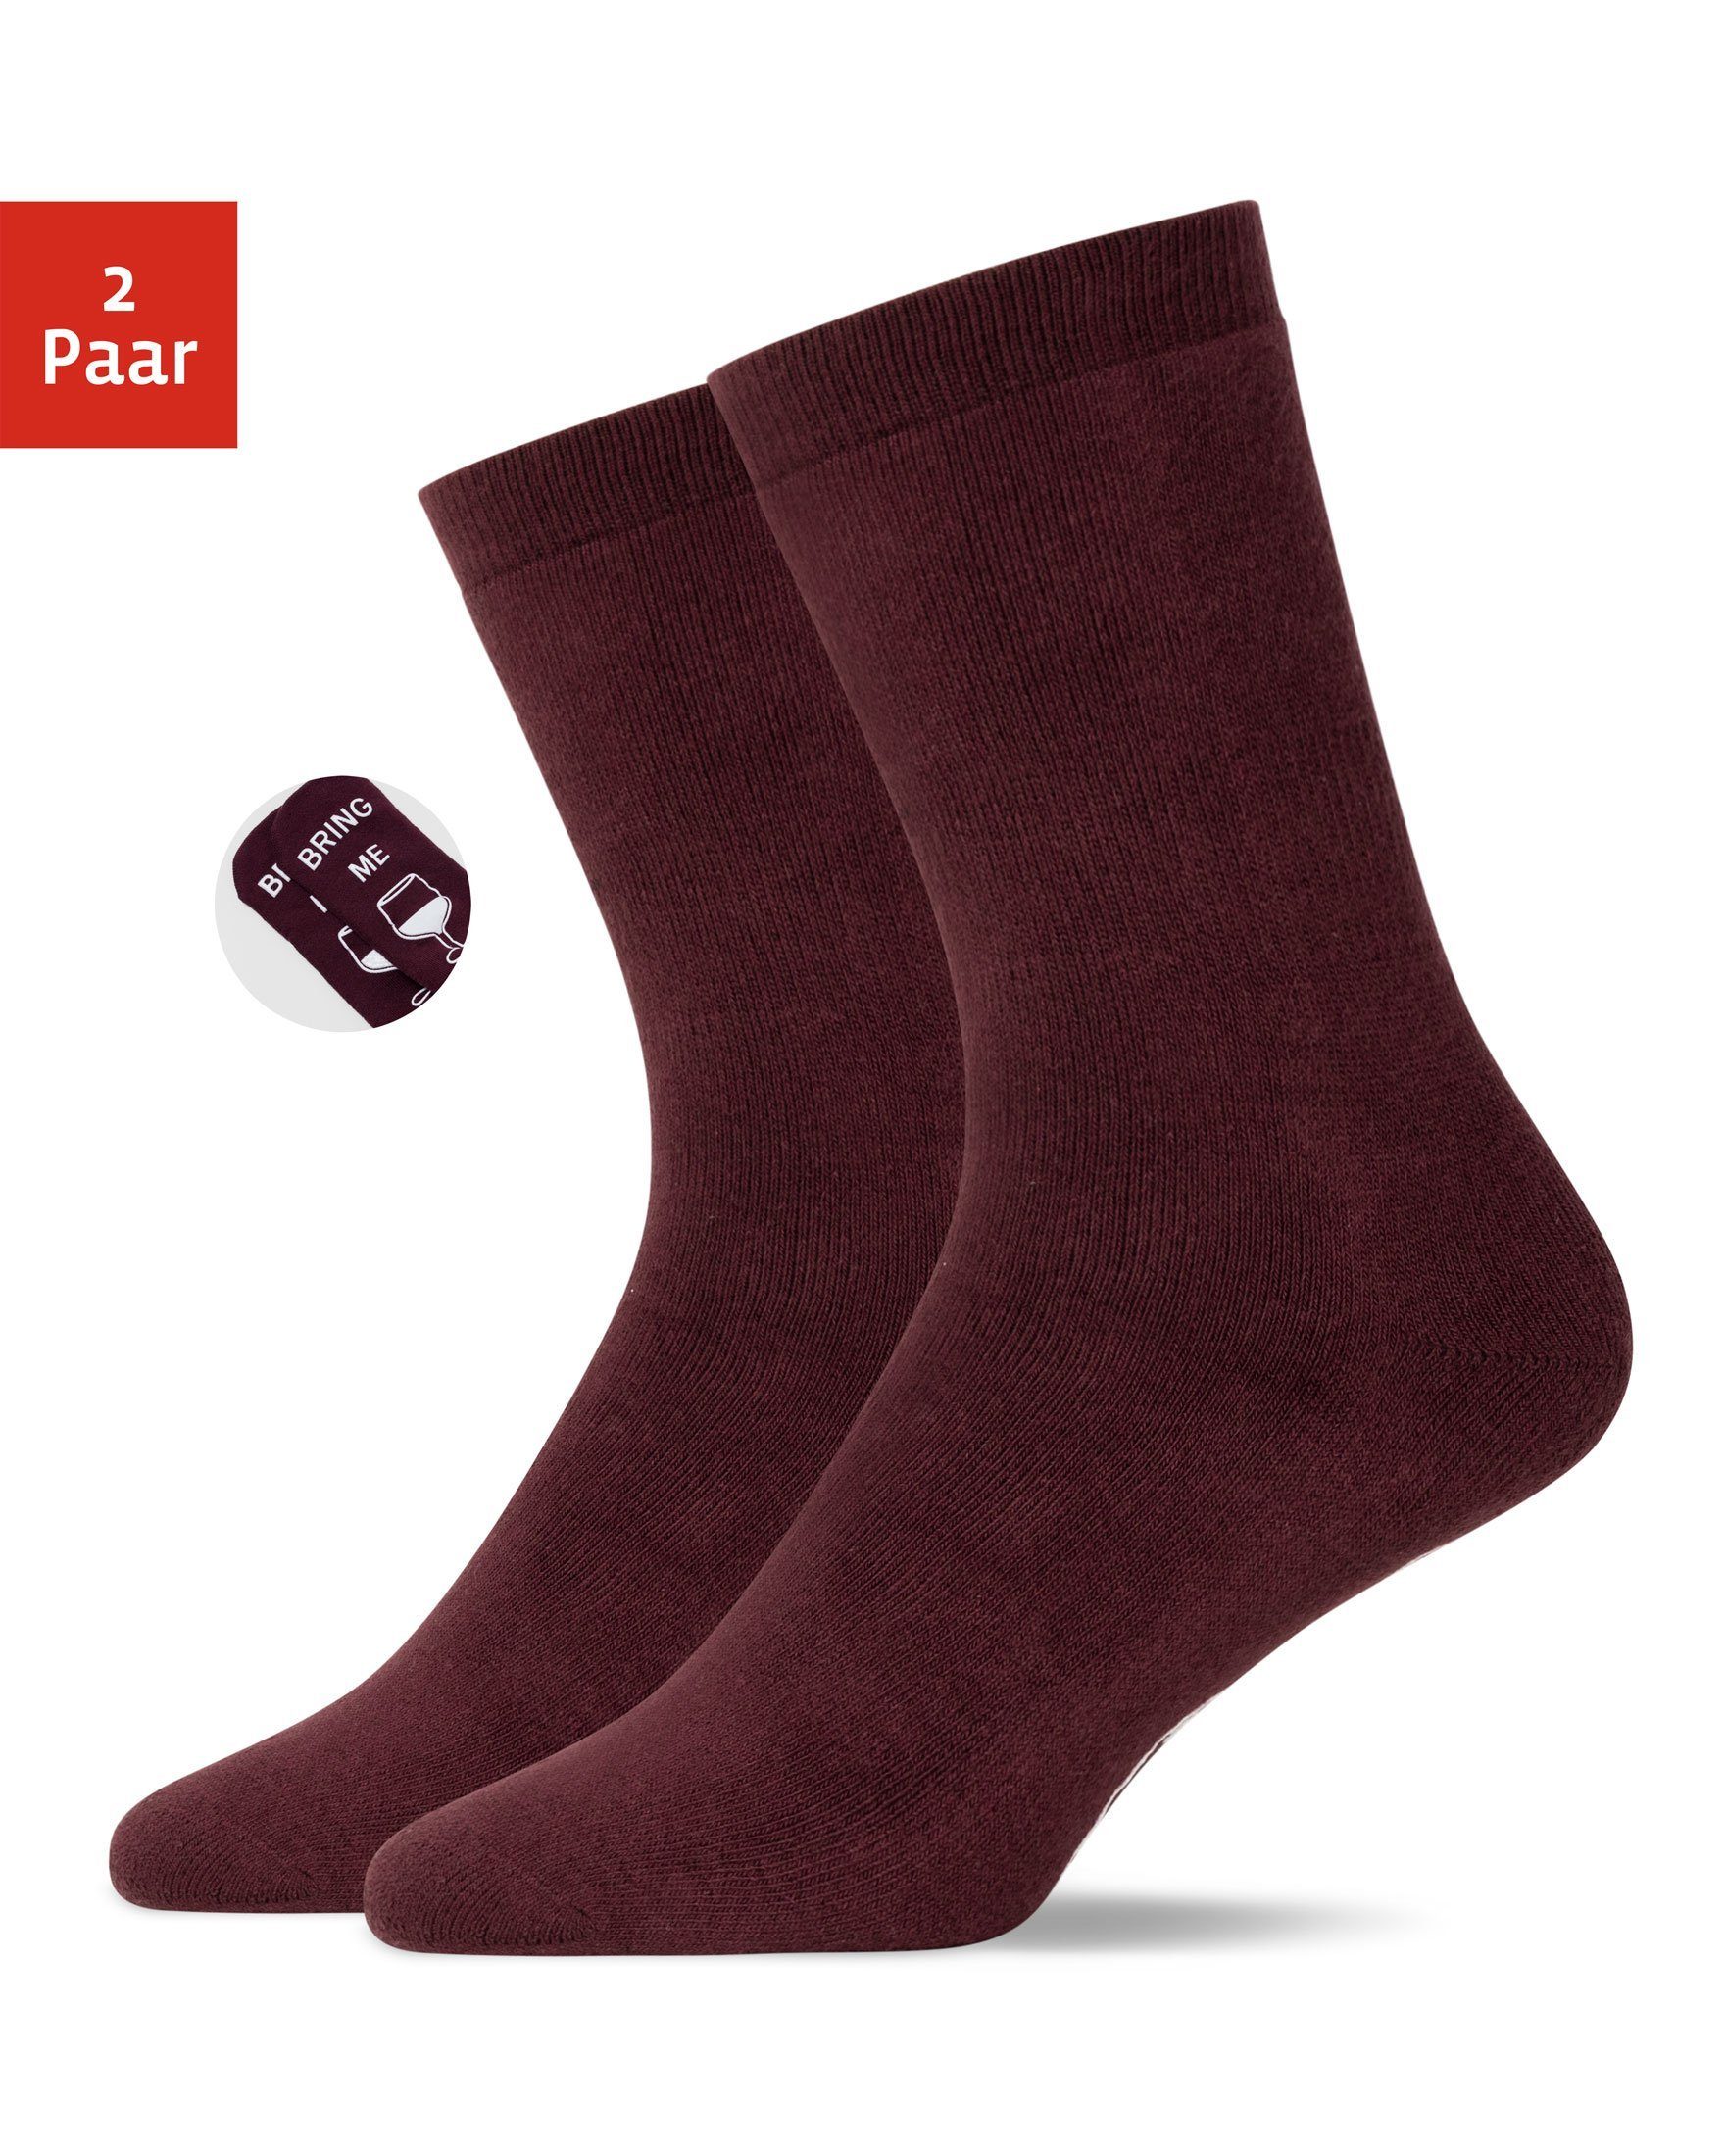 Rote Herren-Socken online kaufen | OTTO